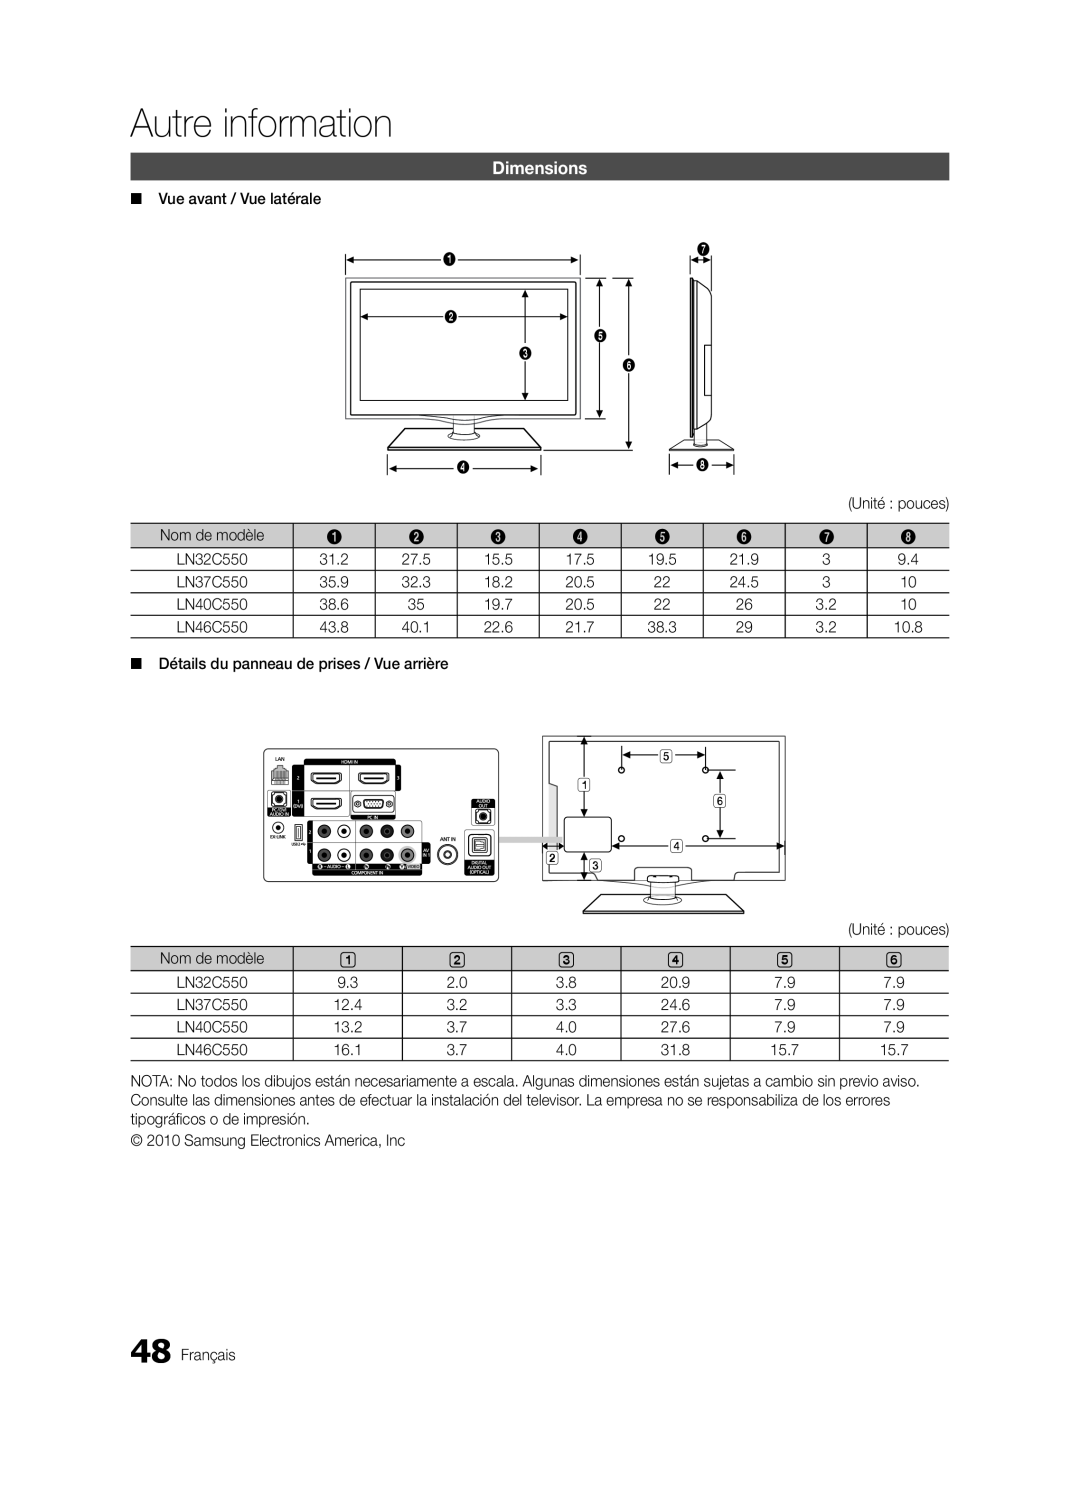 Samsung LN32C550 user manual Autre information, Dimensions, Détails du panneau de prises / Vue arrière 